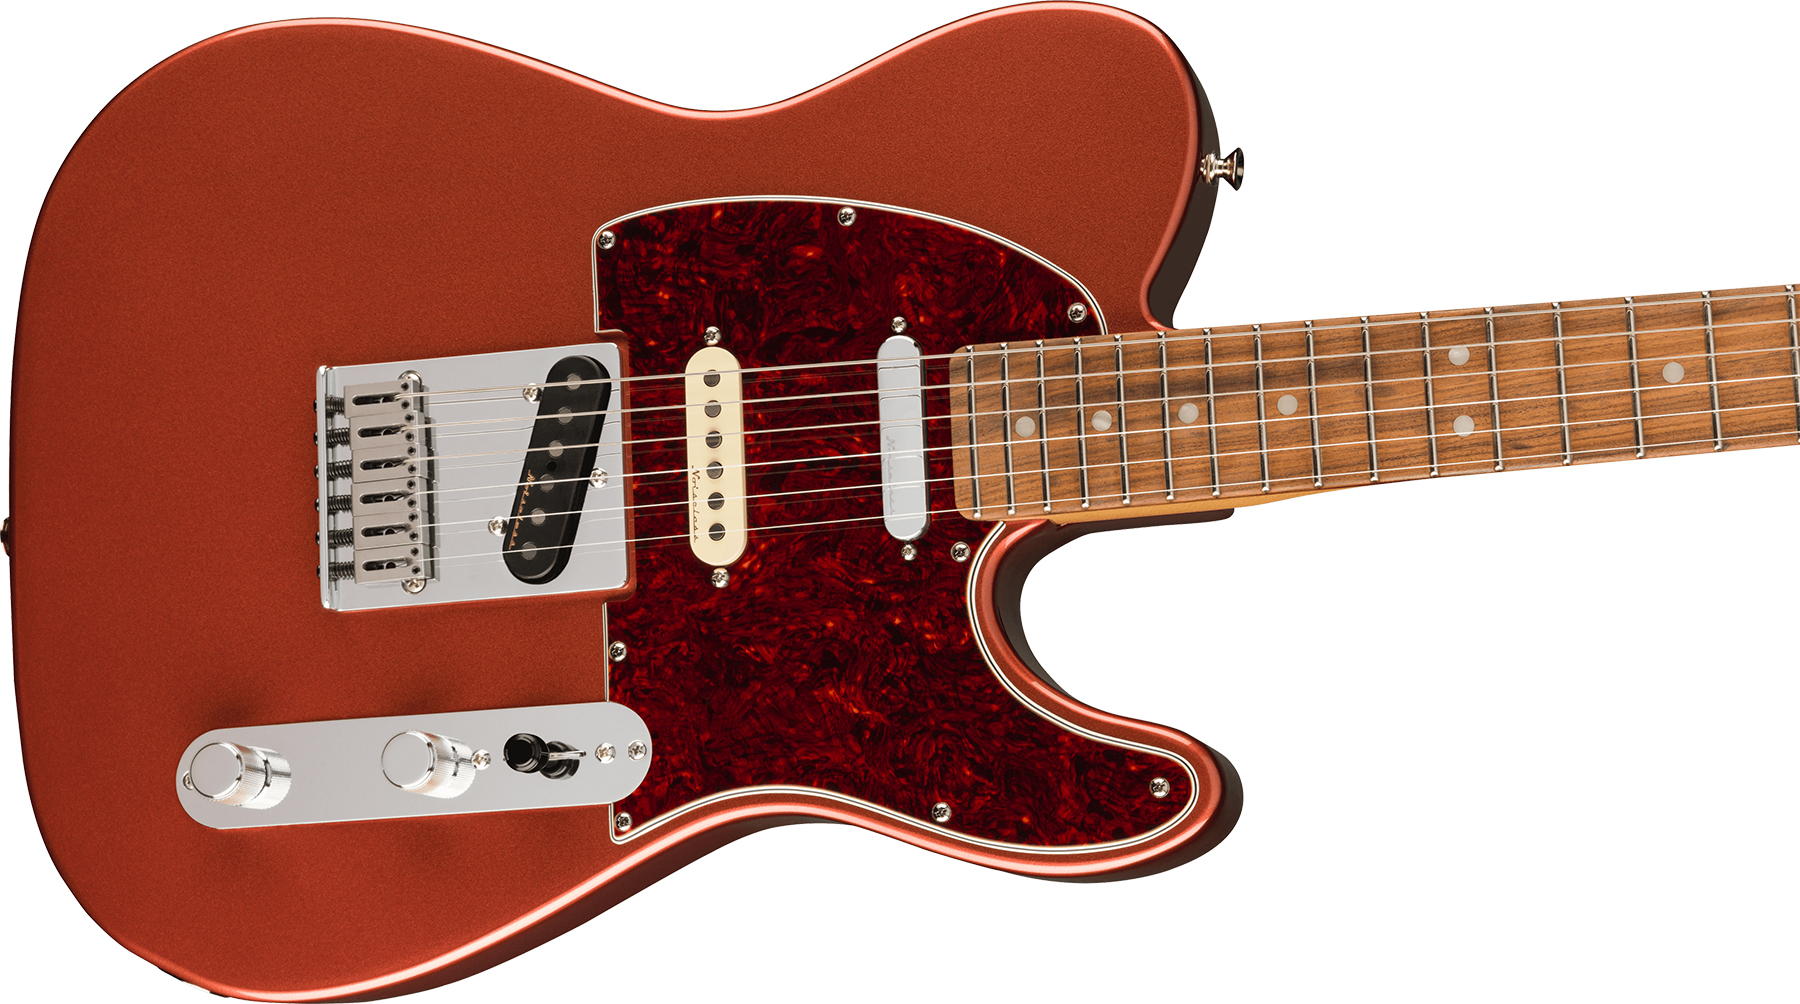 Fender Tele Player Plus Nashville Mex 3s Ht Pf - Aged Candy Apple Red - Guitare Électrique Forme Tel - Variation 2